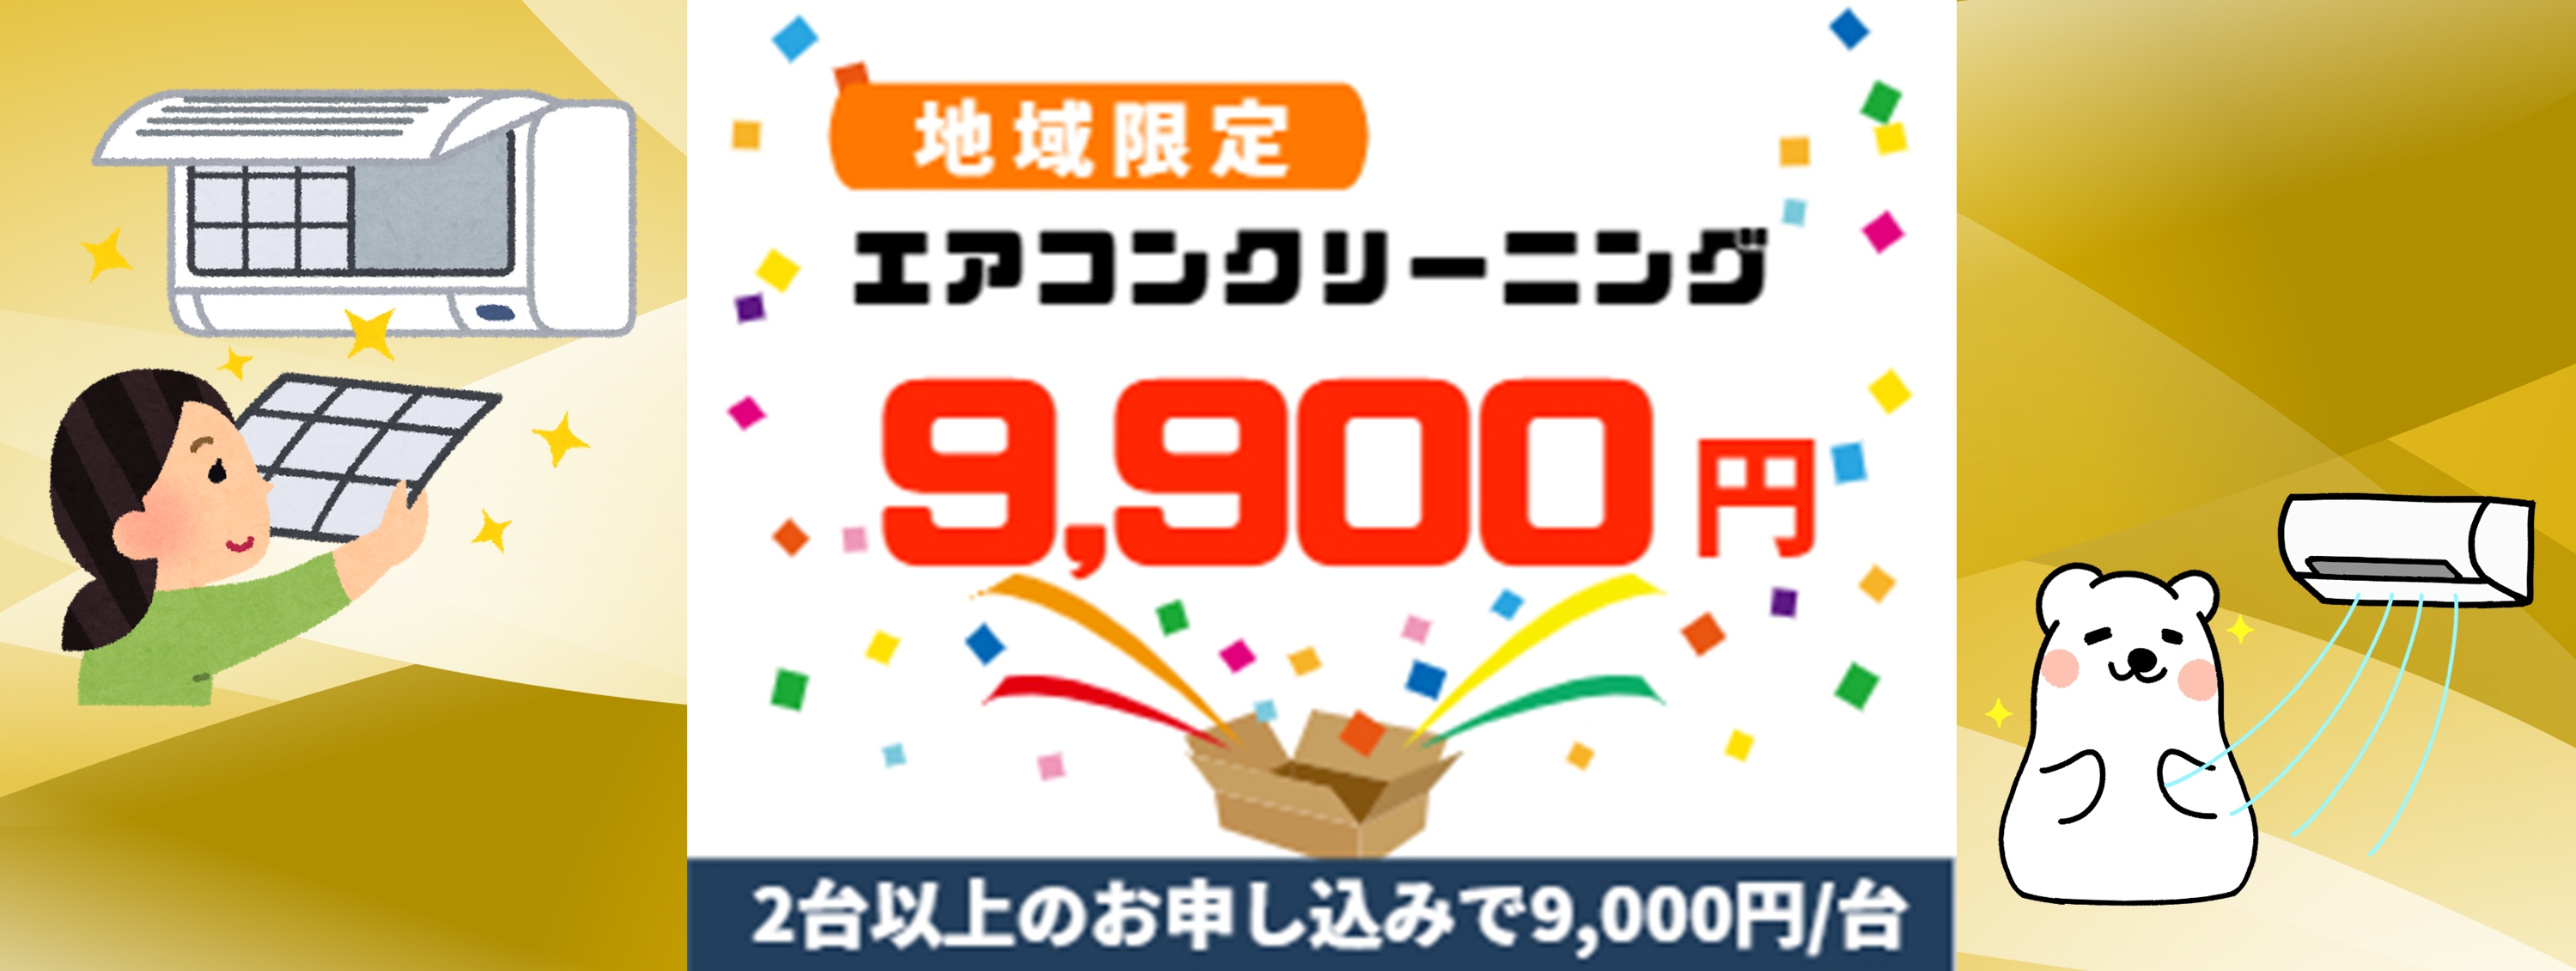 箱根町キャンペーン価格